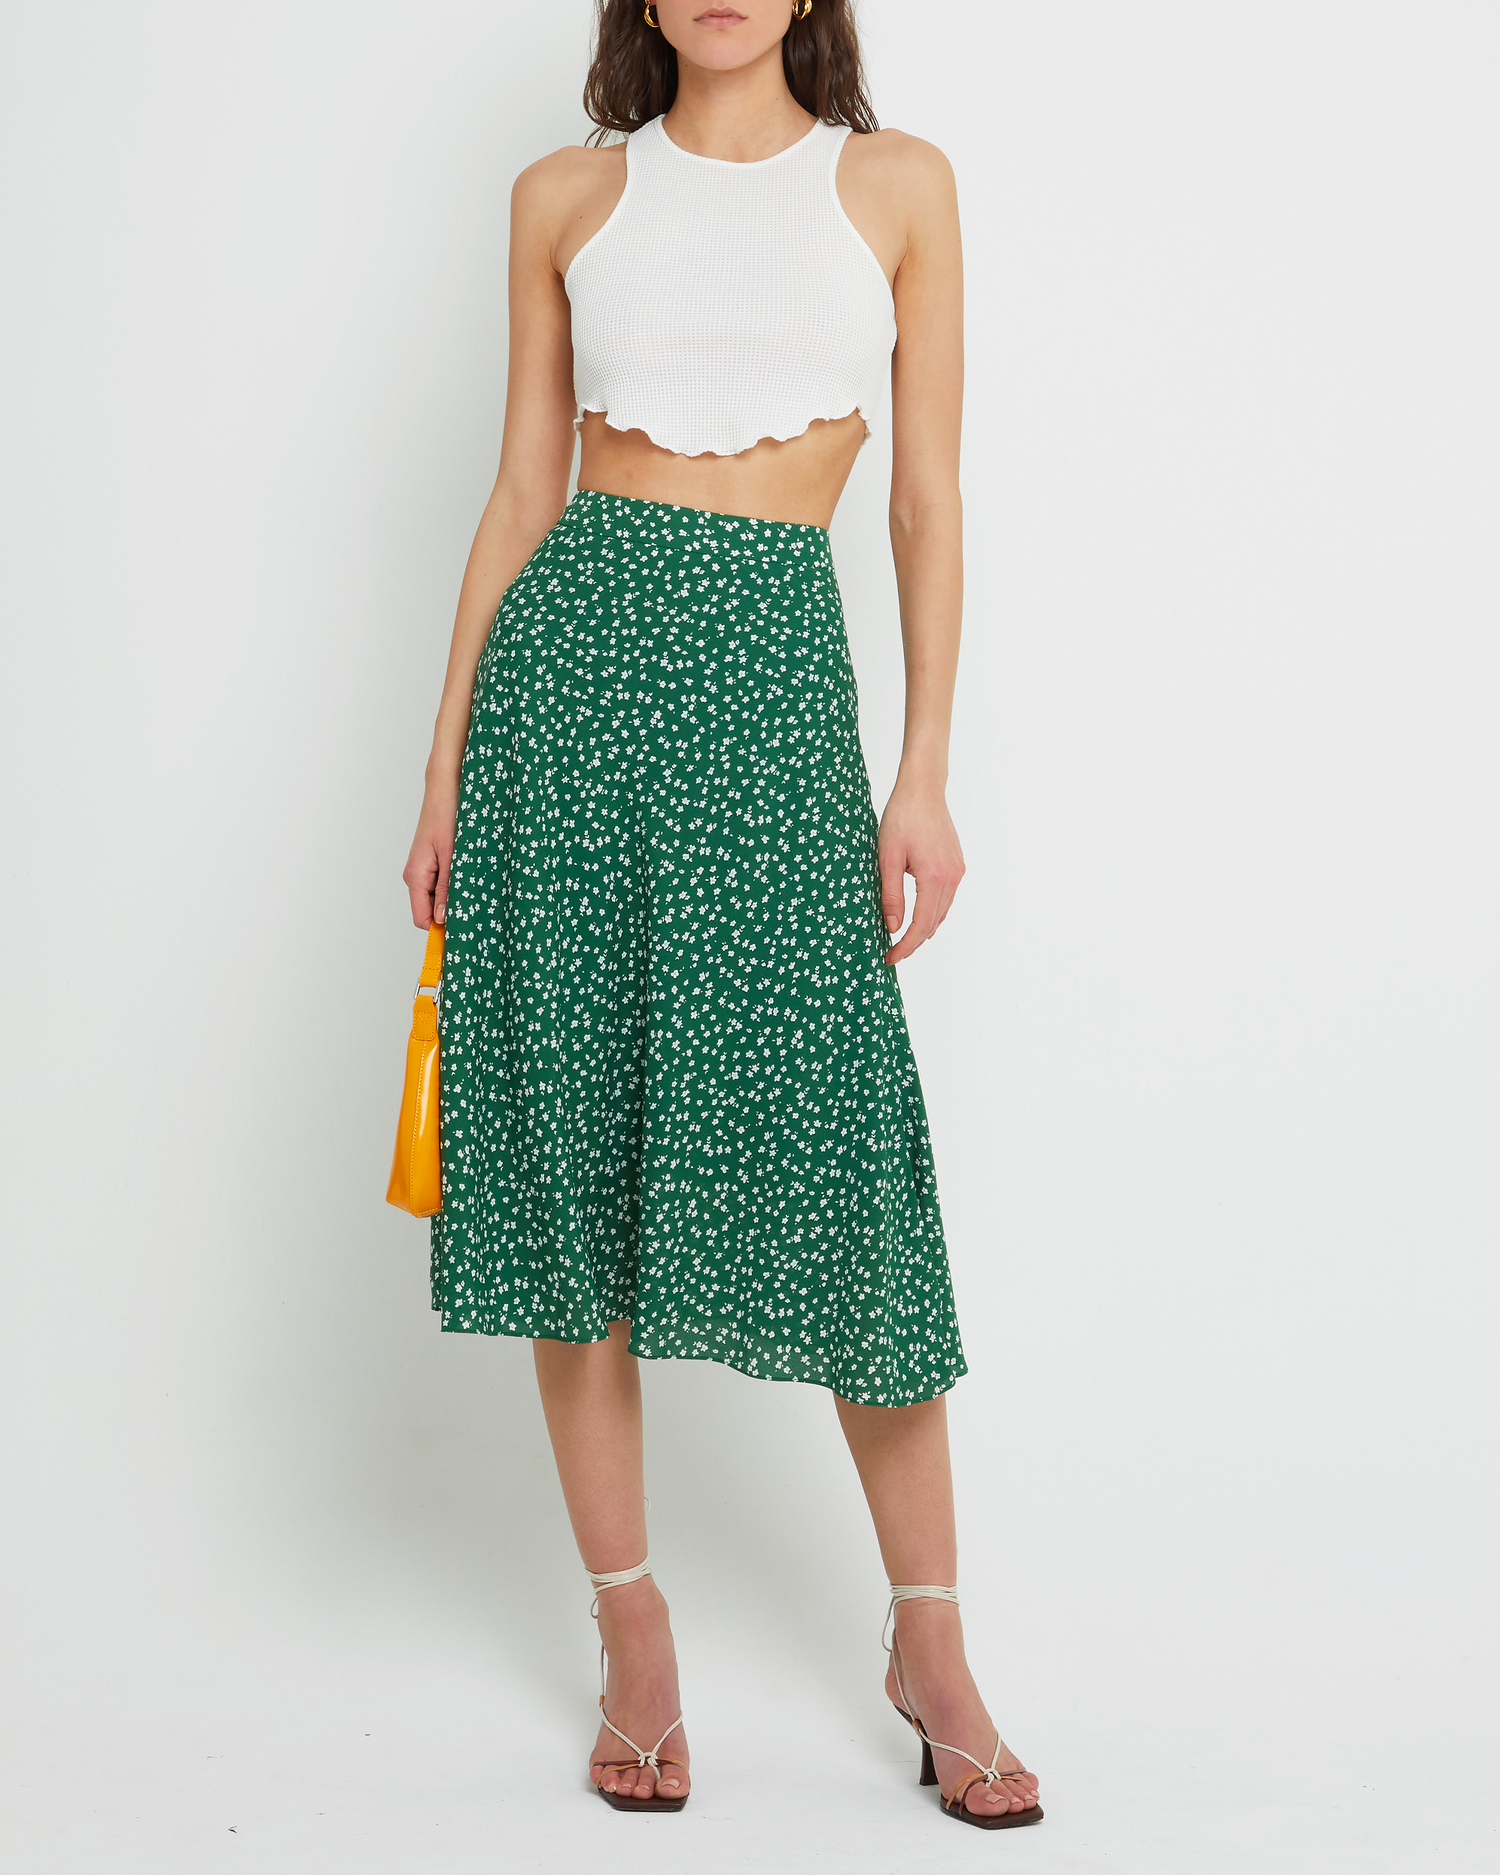 Fourth image of Rilynn Skirt, a green midi skirt, floral, back zipper